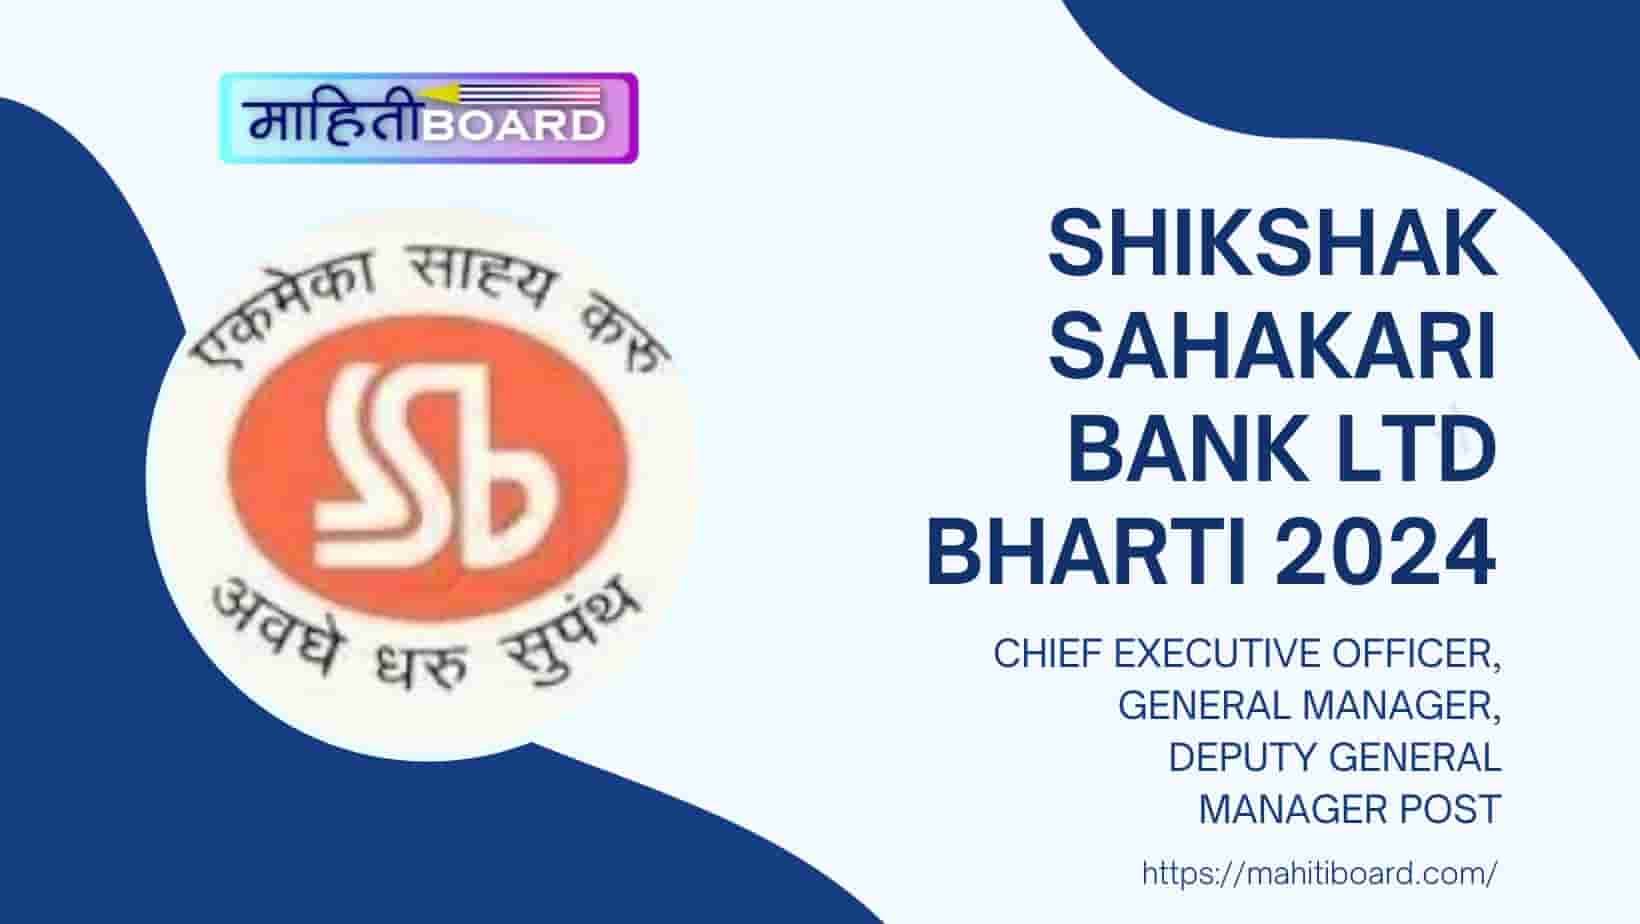 Shikshak Sahakari Bank Ltd Bharti 2024